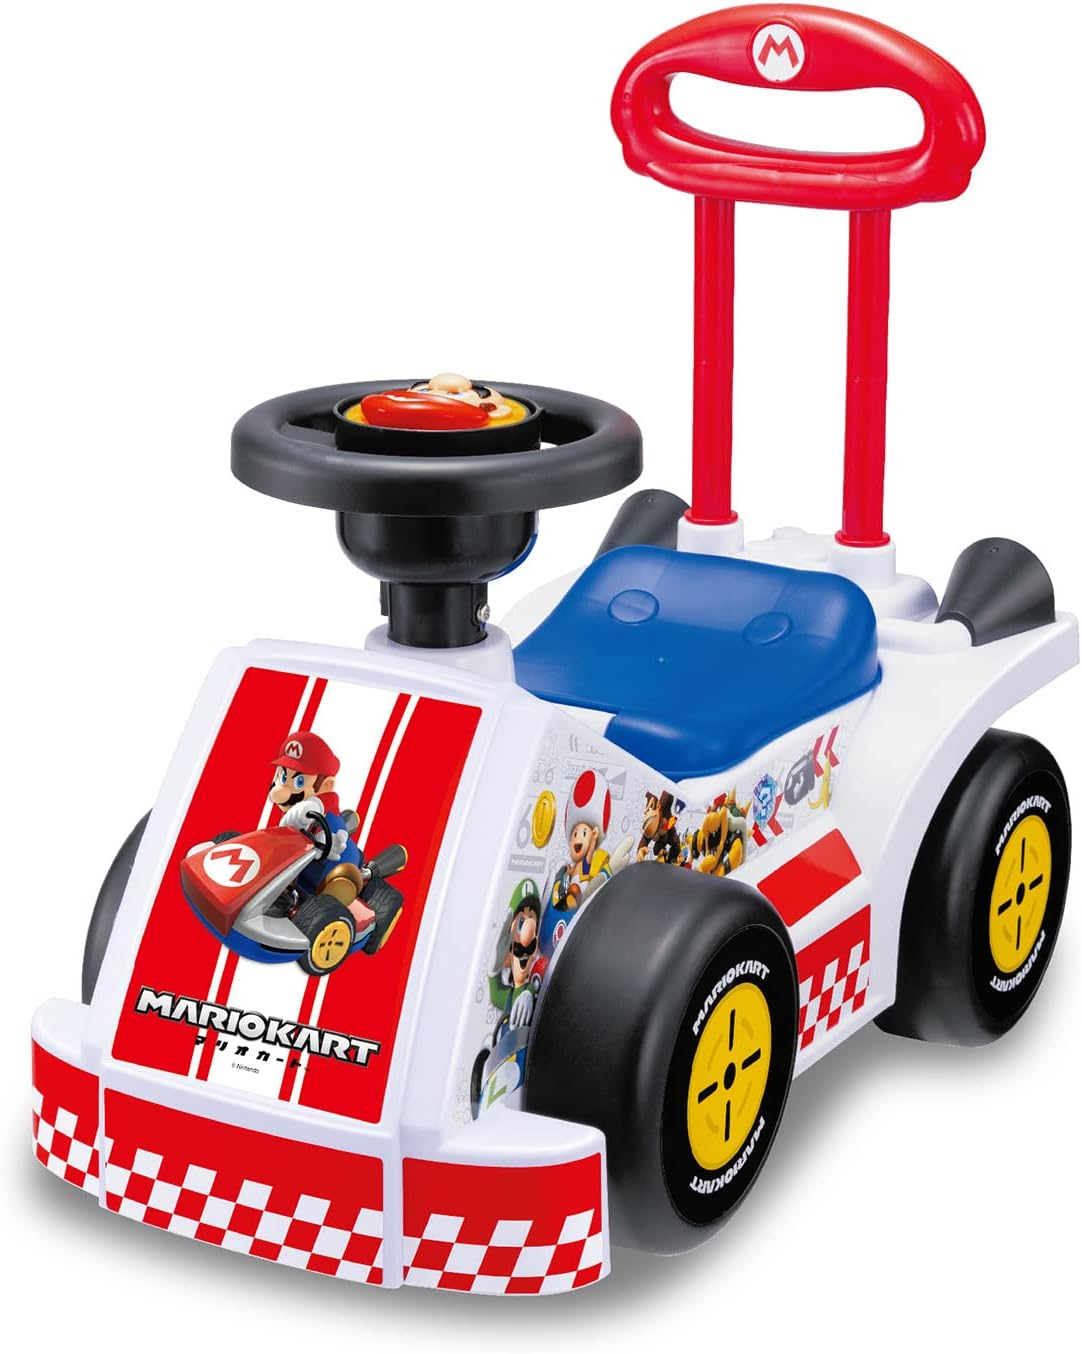 免運 日本 JOYPALETTE 瑪利歐賽車 Lets a Go! 兒童 滑步車 助步車 玩具車 20種聲音 耐重25kg 禮物